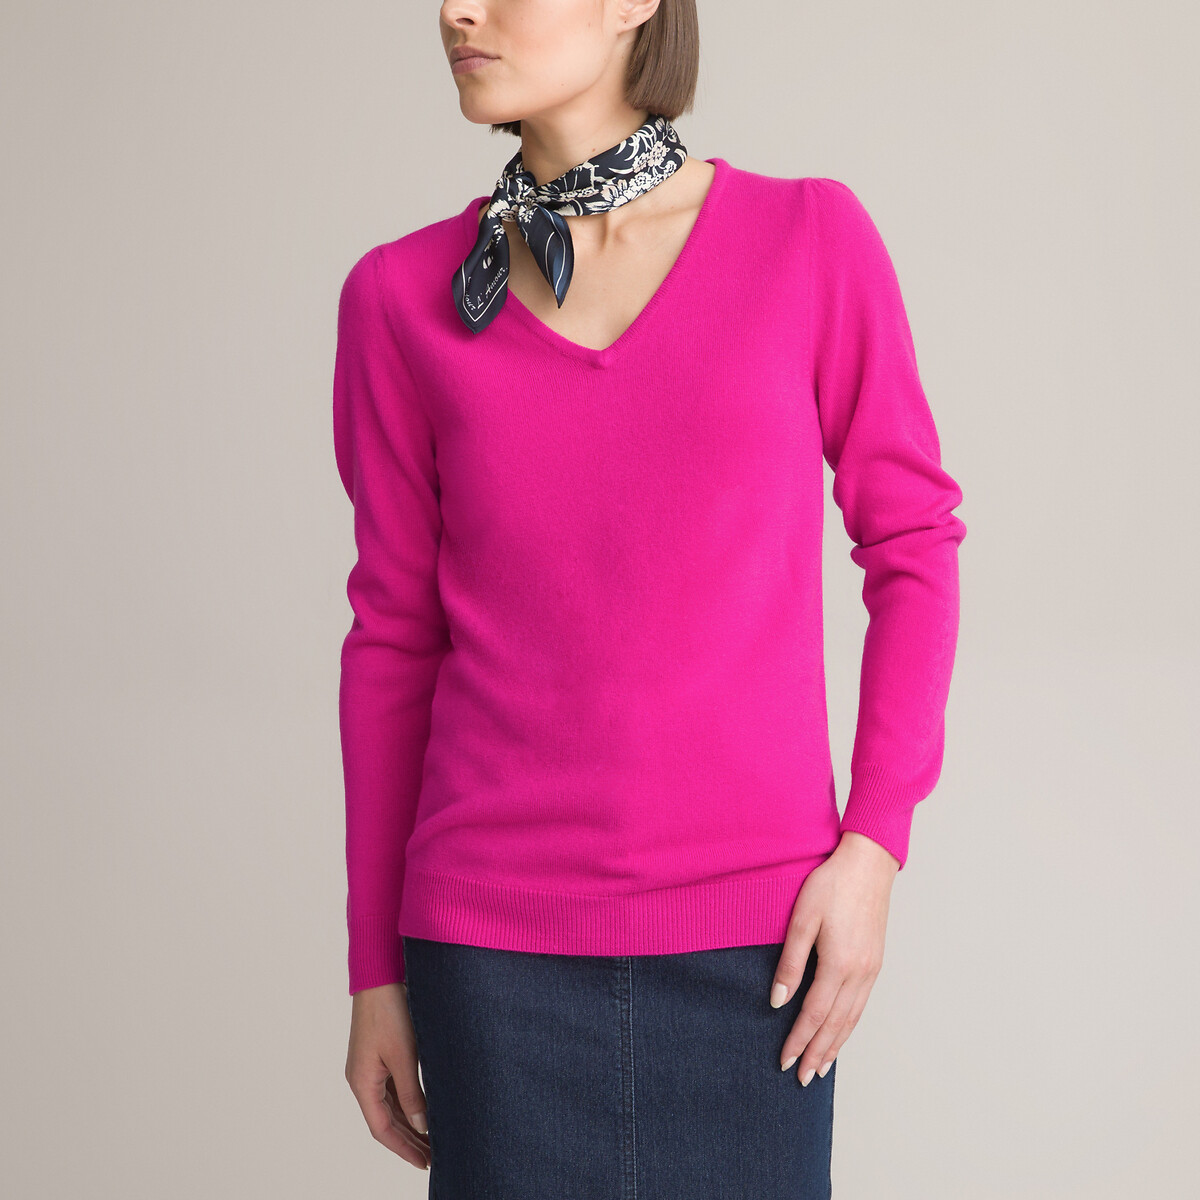 Пуловер с V-образным вырезом из тонкого трикотажа 46/48 (FR) - 52/54 (RUS) розовый